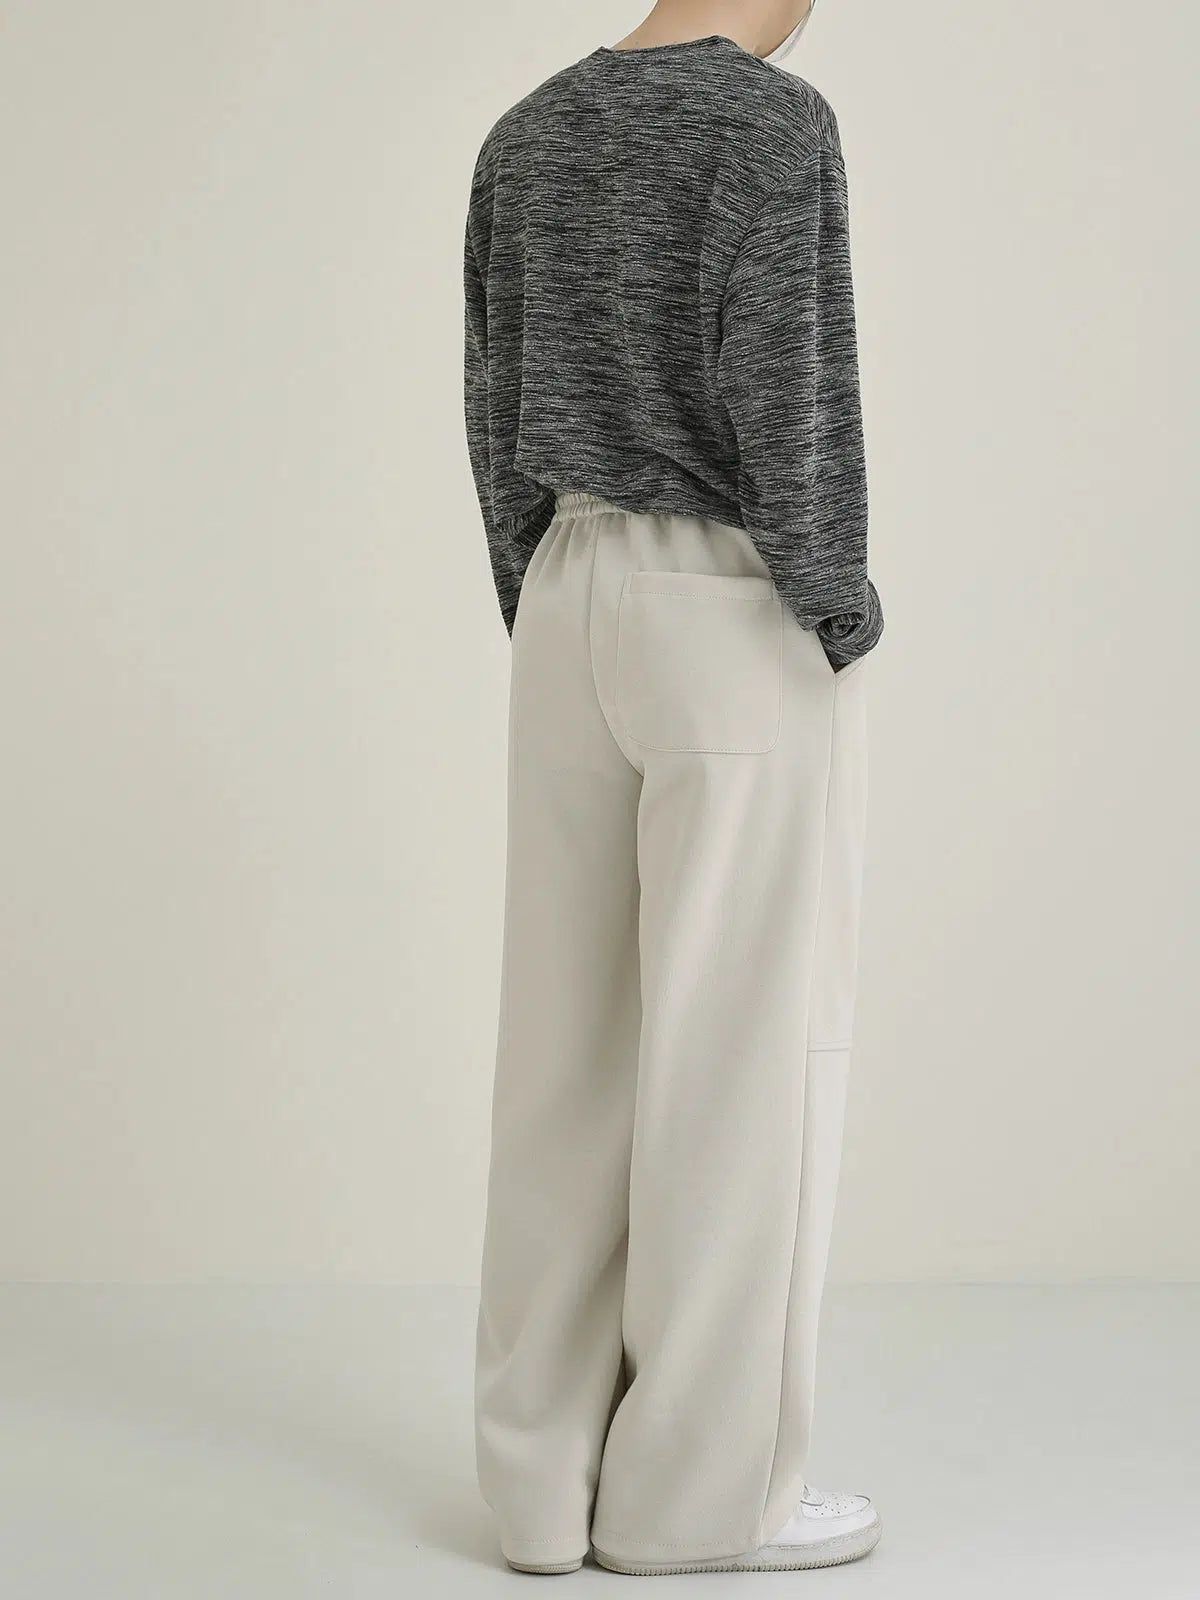 Zhou Drappy Long Sleeve T-Shirt-korean-fashion-T-Shirt-Zhou's Closet-OH Garments